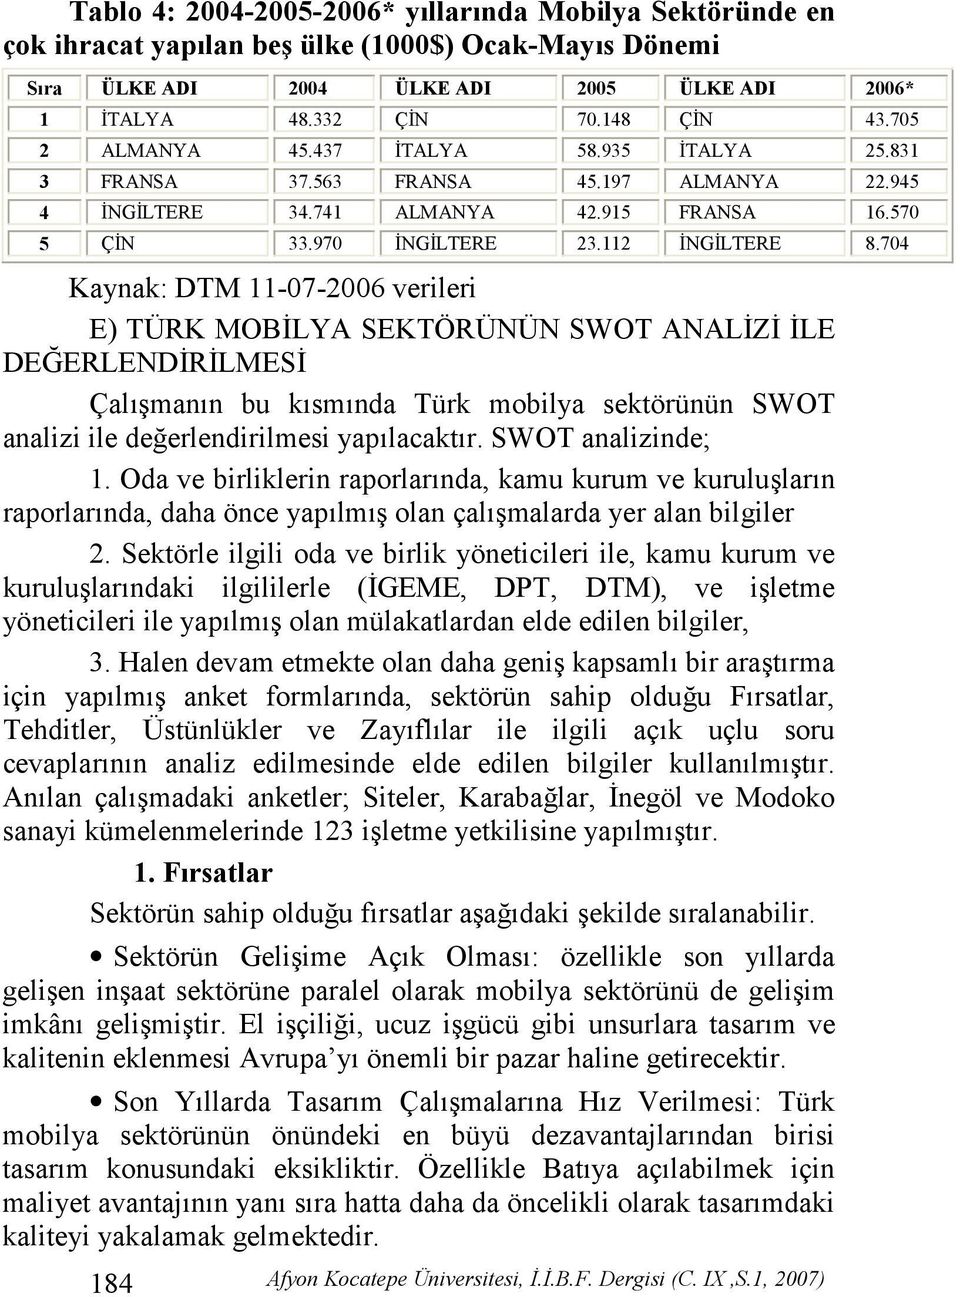 704 Kaynak: DTM 11-07-2006 verileri E) TÜRK MOB(LYA SEKTÖRÜNÜN SWOT ANAL(Z( (LE DEZERLEND(R(LMES( Çalmann bu ksmnda Türk mobilya sektörünün SWOT analizi ile de'erlendirilmesi yaplacaktr.